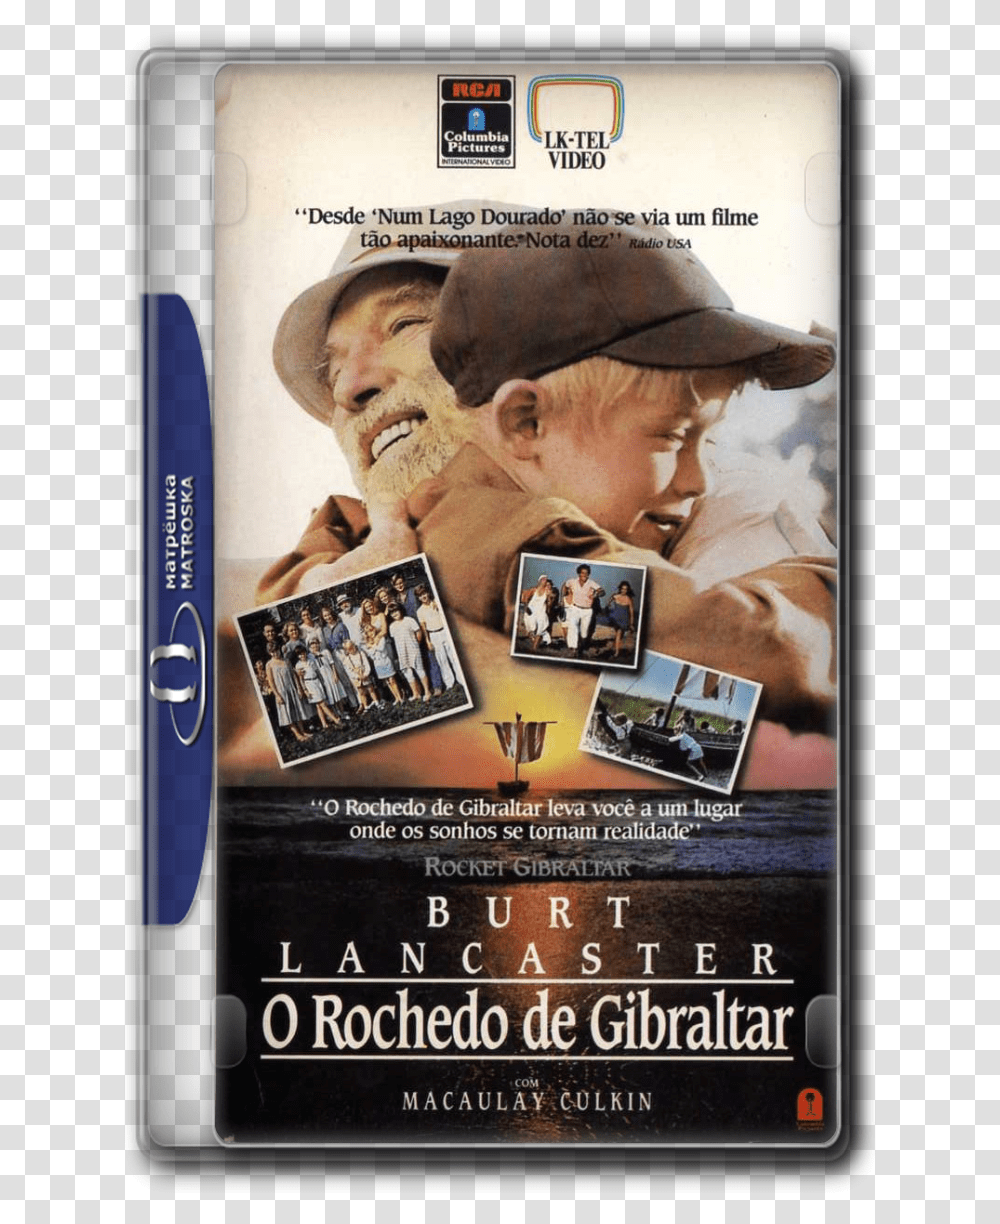 Rocket Gibraltar Dvd, Poster, Advertisement, Flyer, Paper Transparent Png